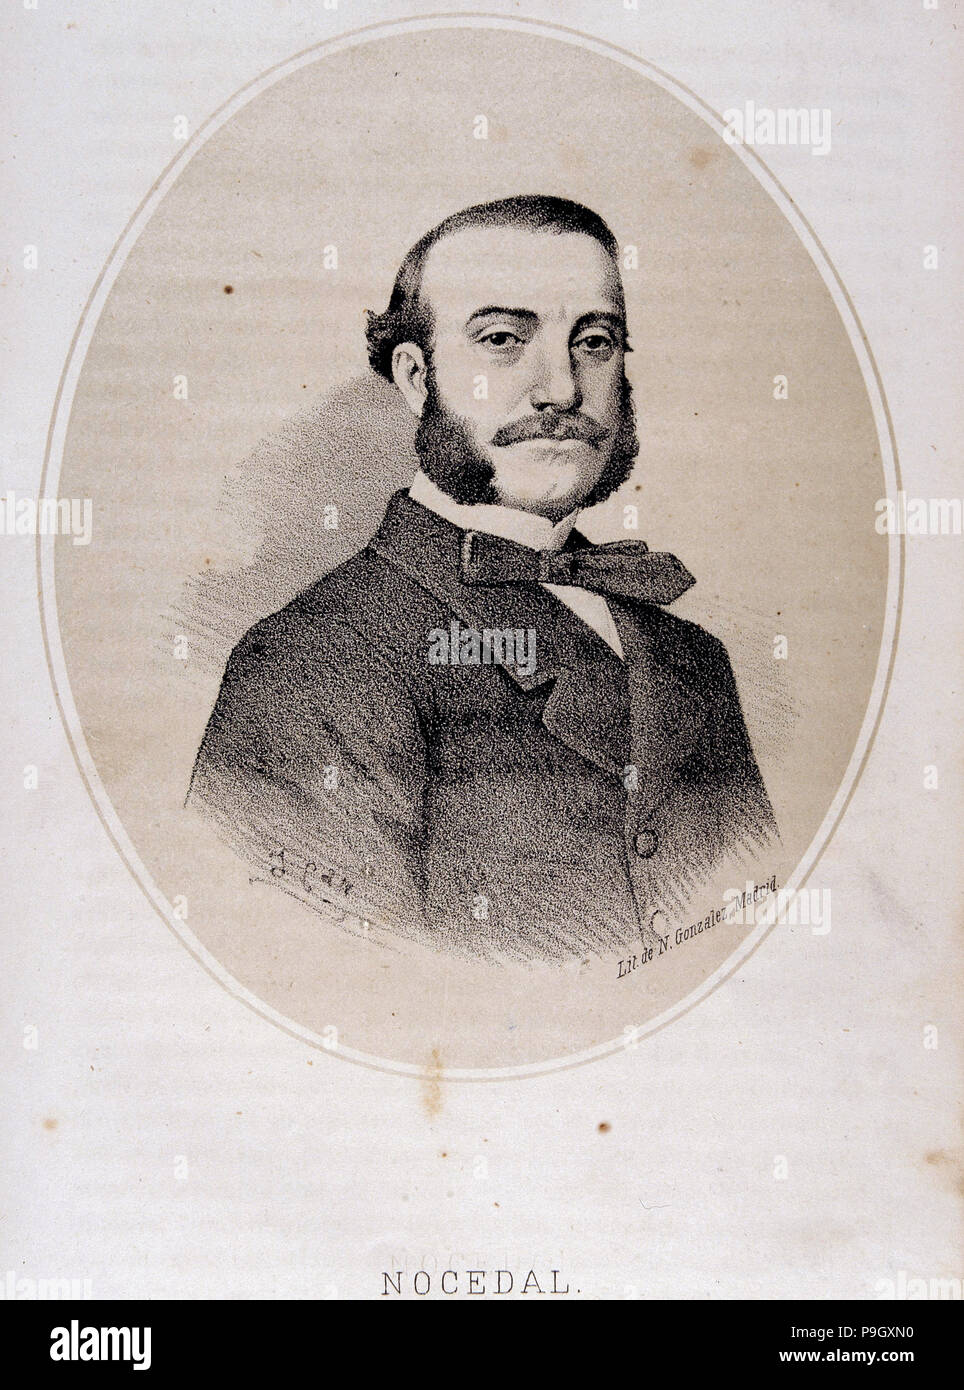 Cándido Nocedal (1821-1885), spanischer Politiker, Lithographie von J. Denou. Stockfoto